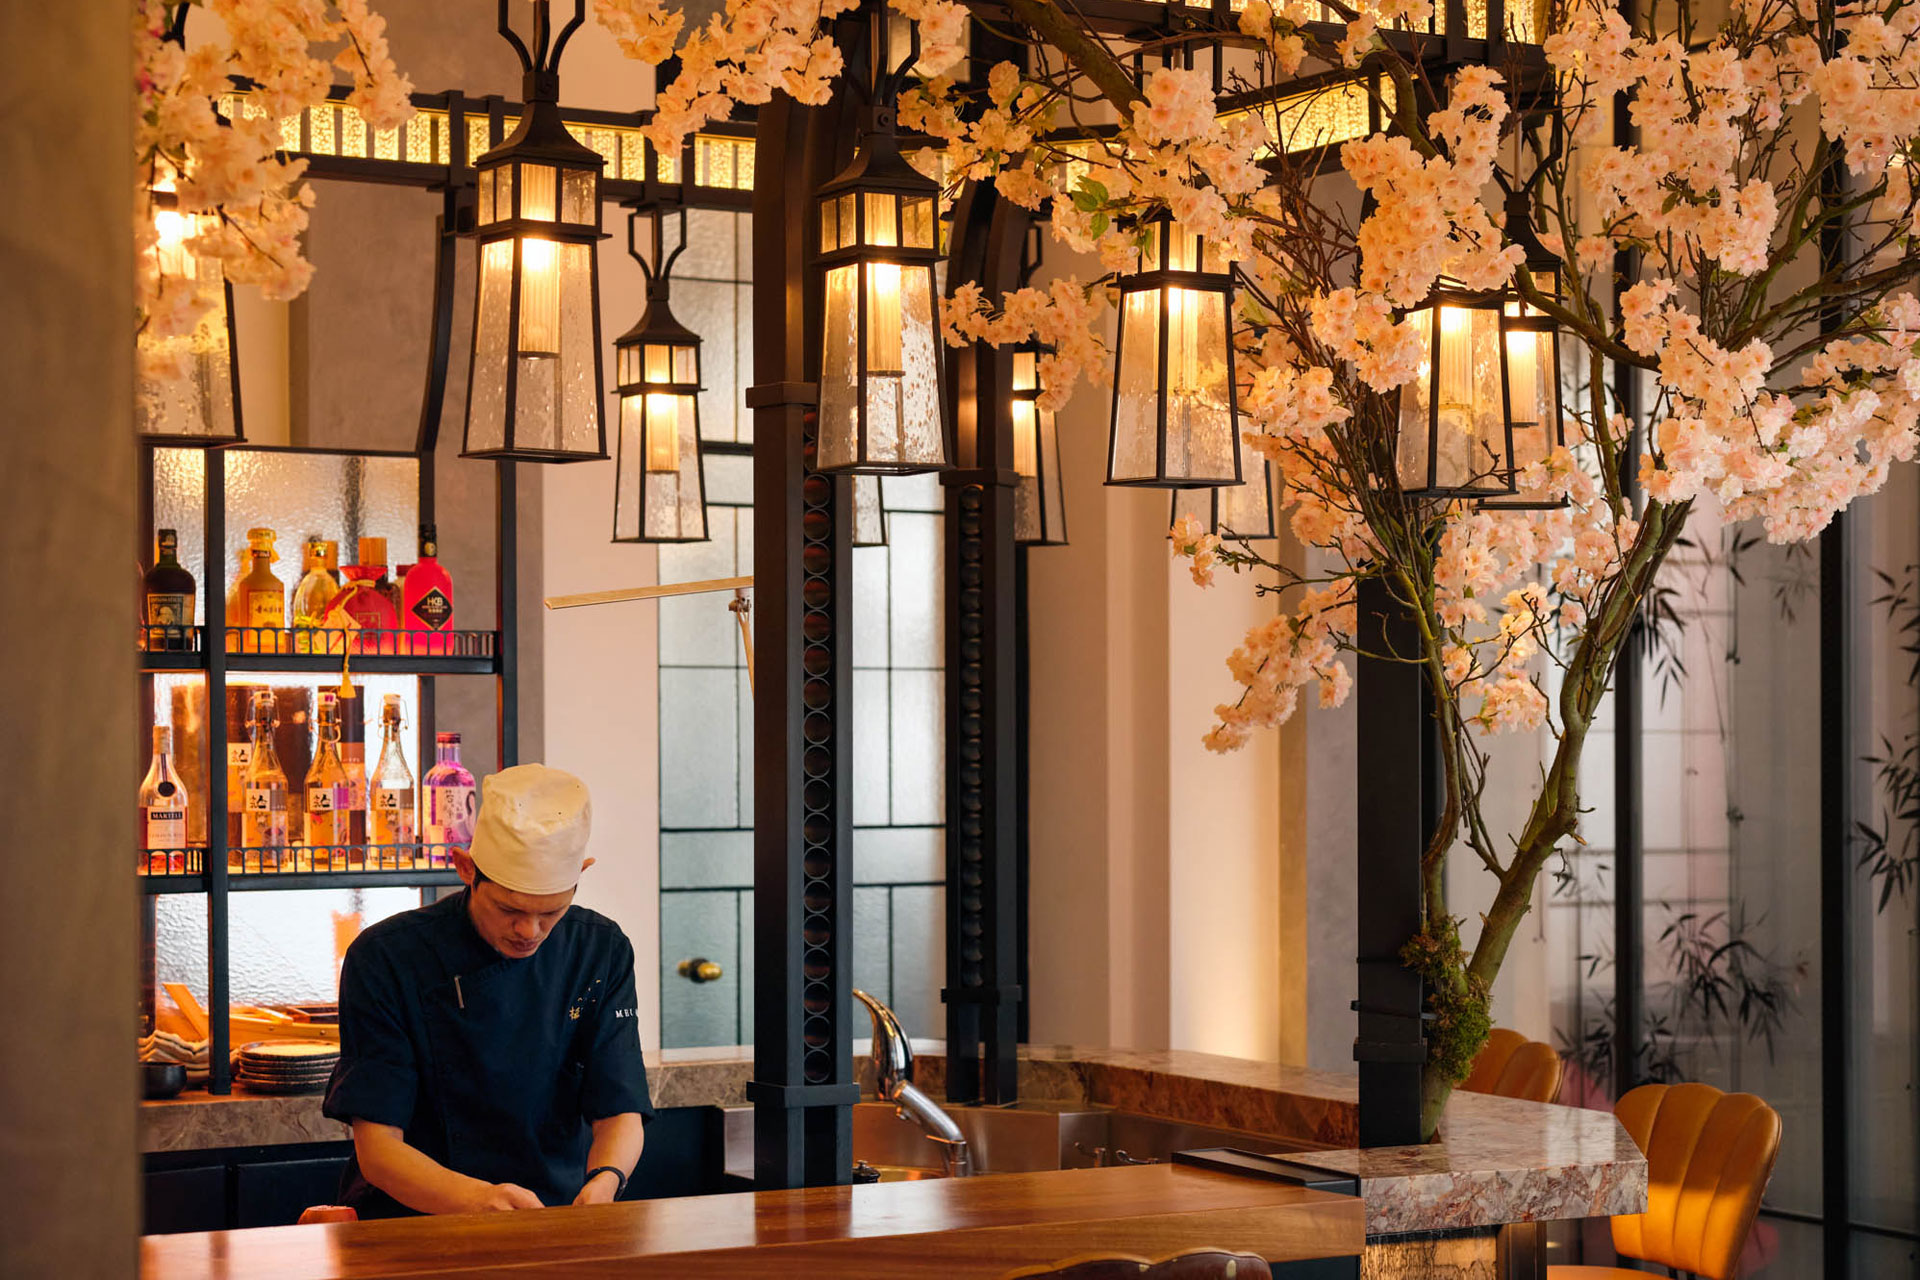 Sakura Season: 4 Cherry Blossom-Filled Restaurants For Spring